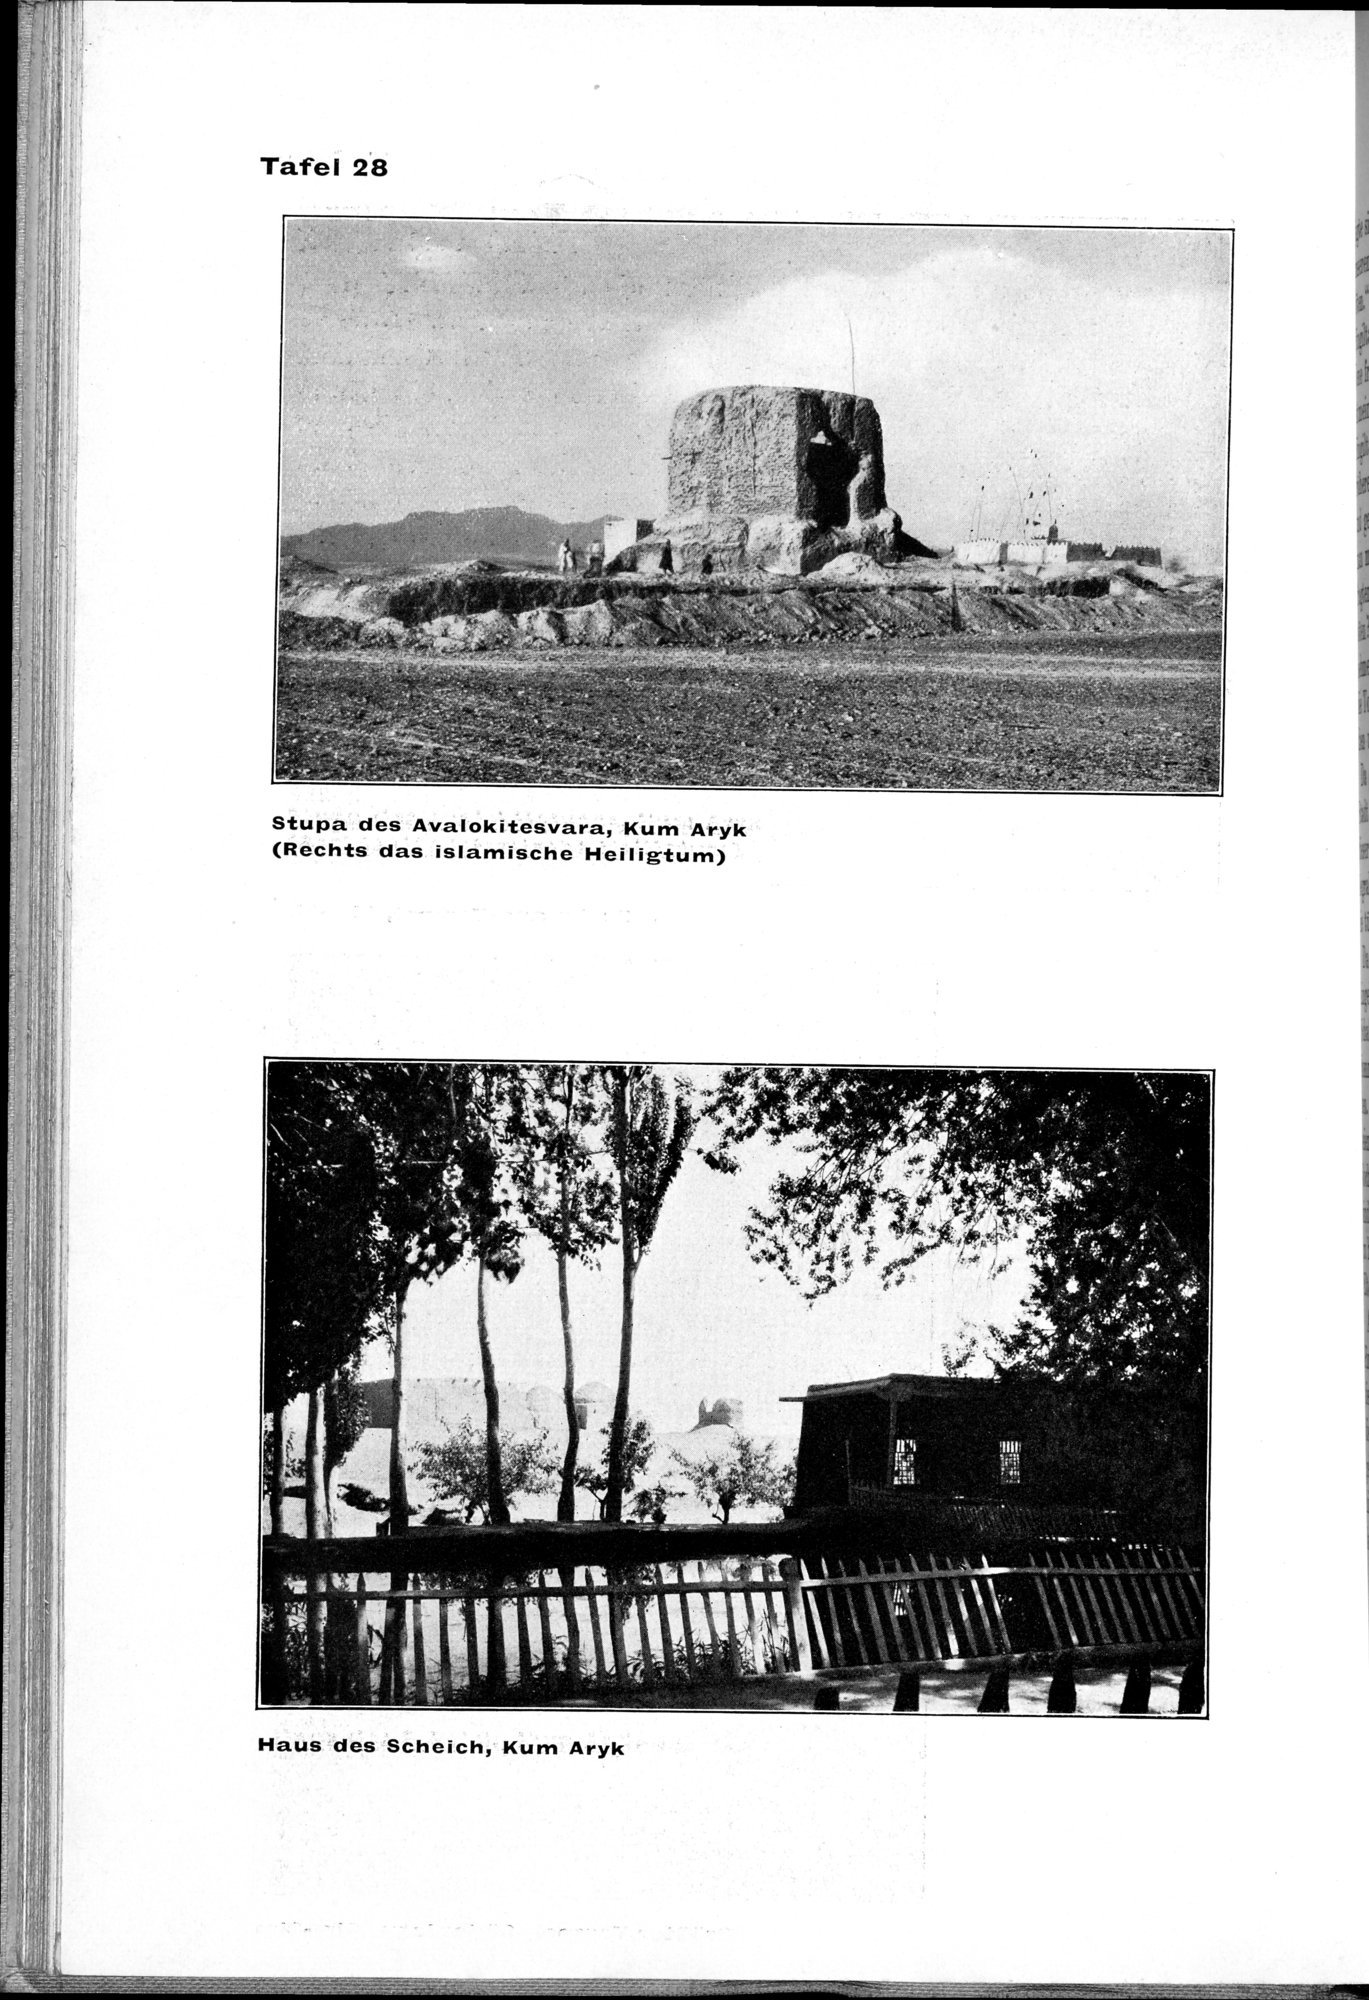 Von Land und Leuten in Ostturkistan : vol.1 / Page 144 (Grayscale High Resolution Image)